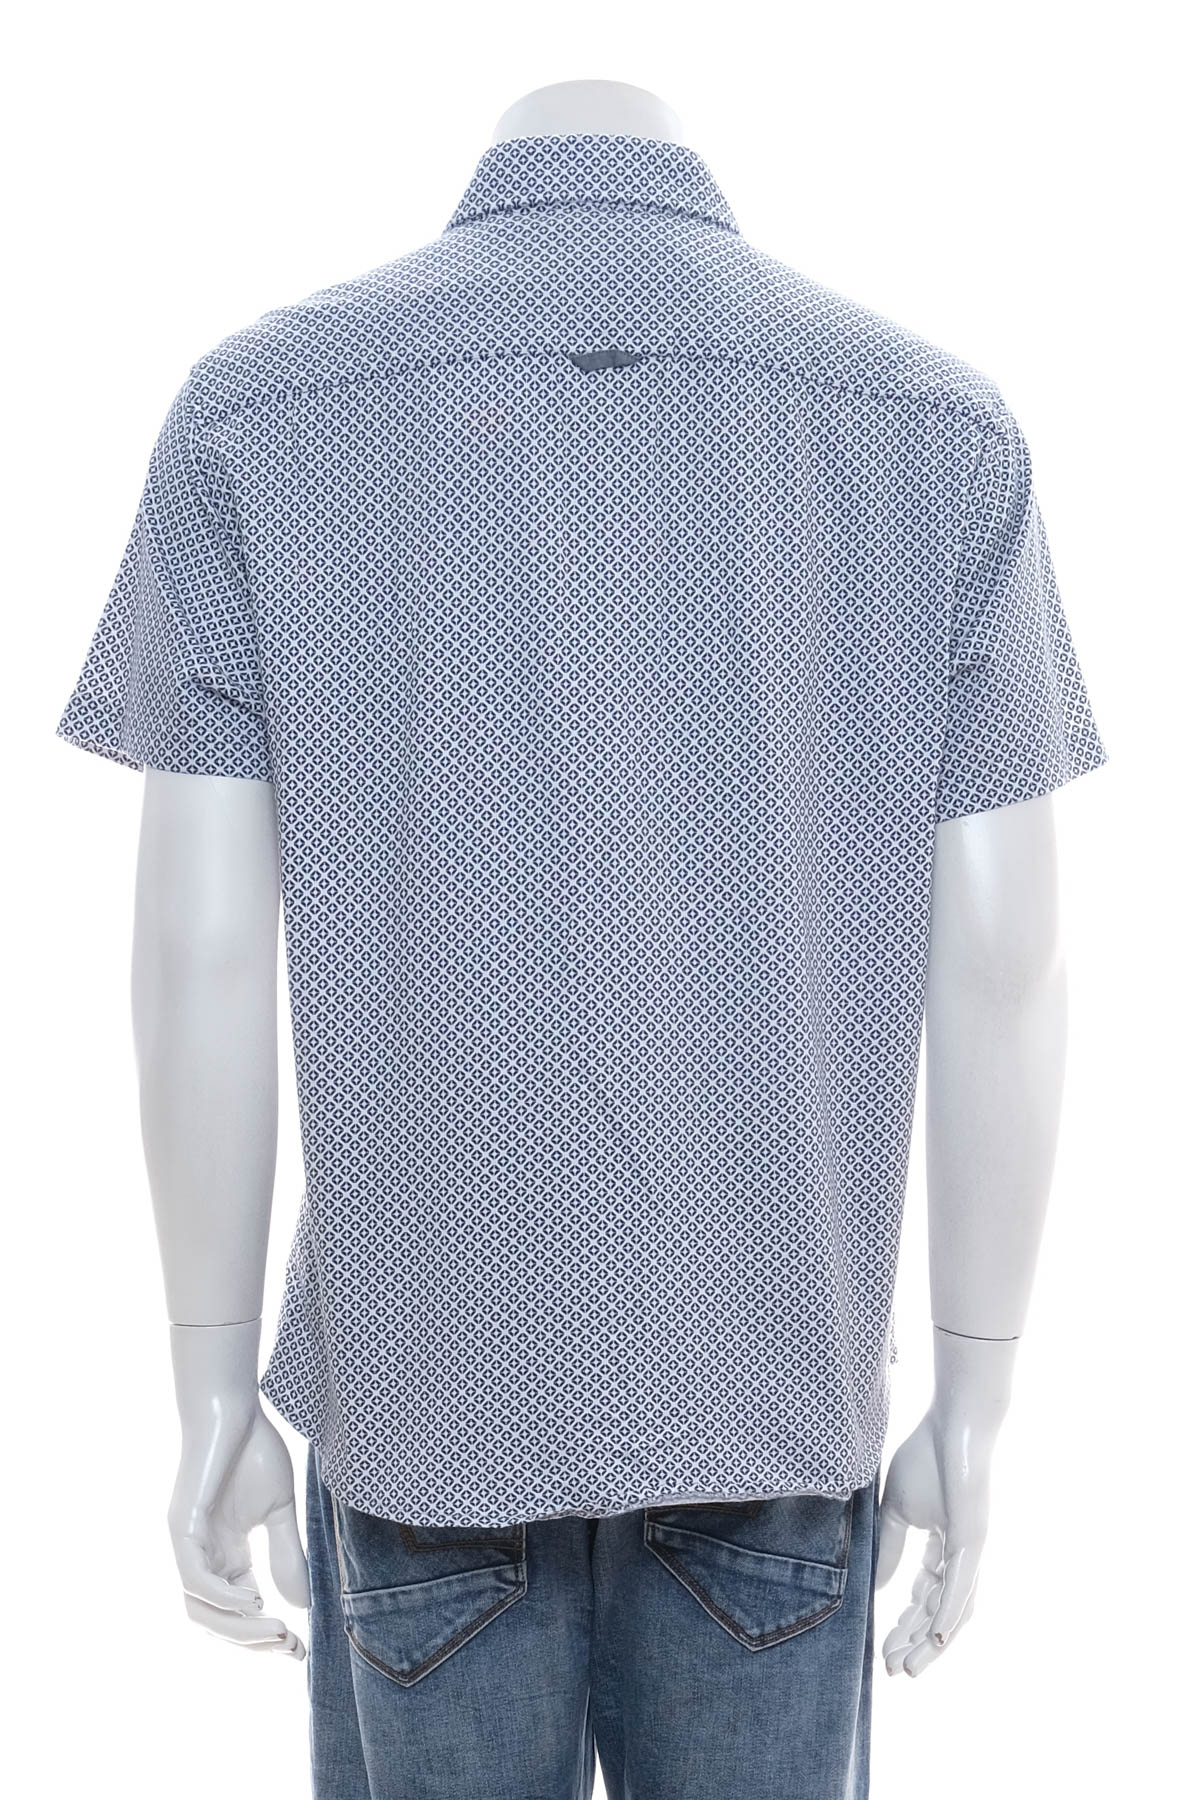 Ανδρικό πουκάμισο - Engbers - 1